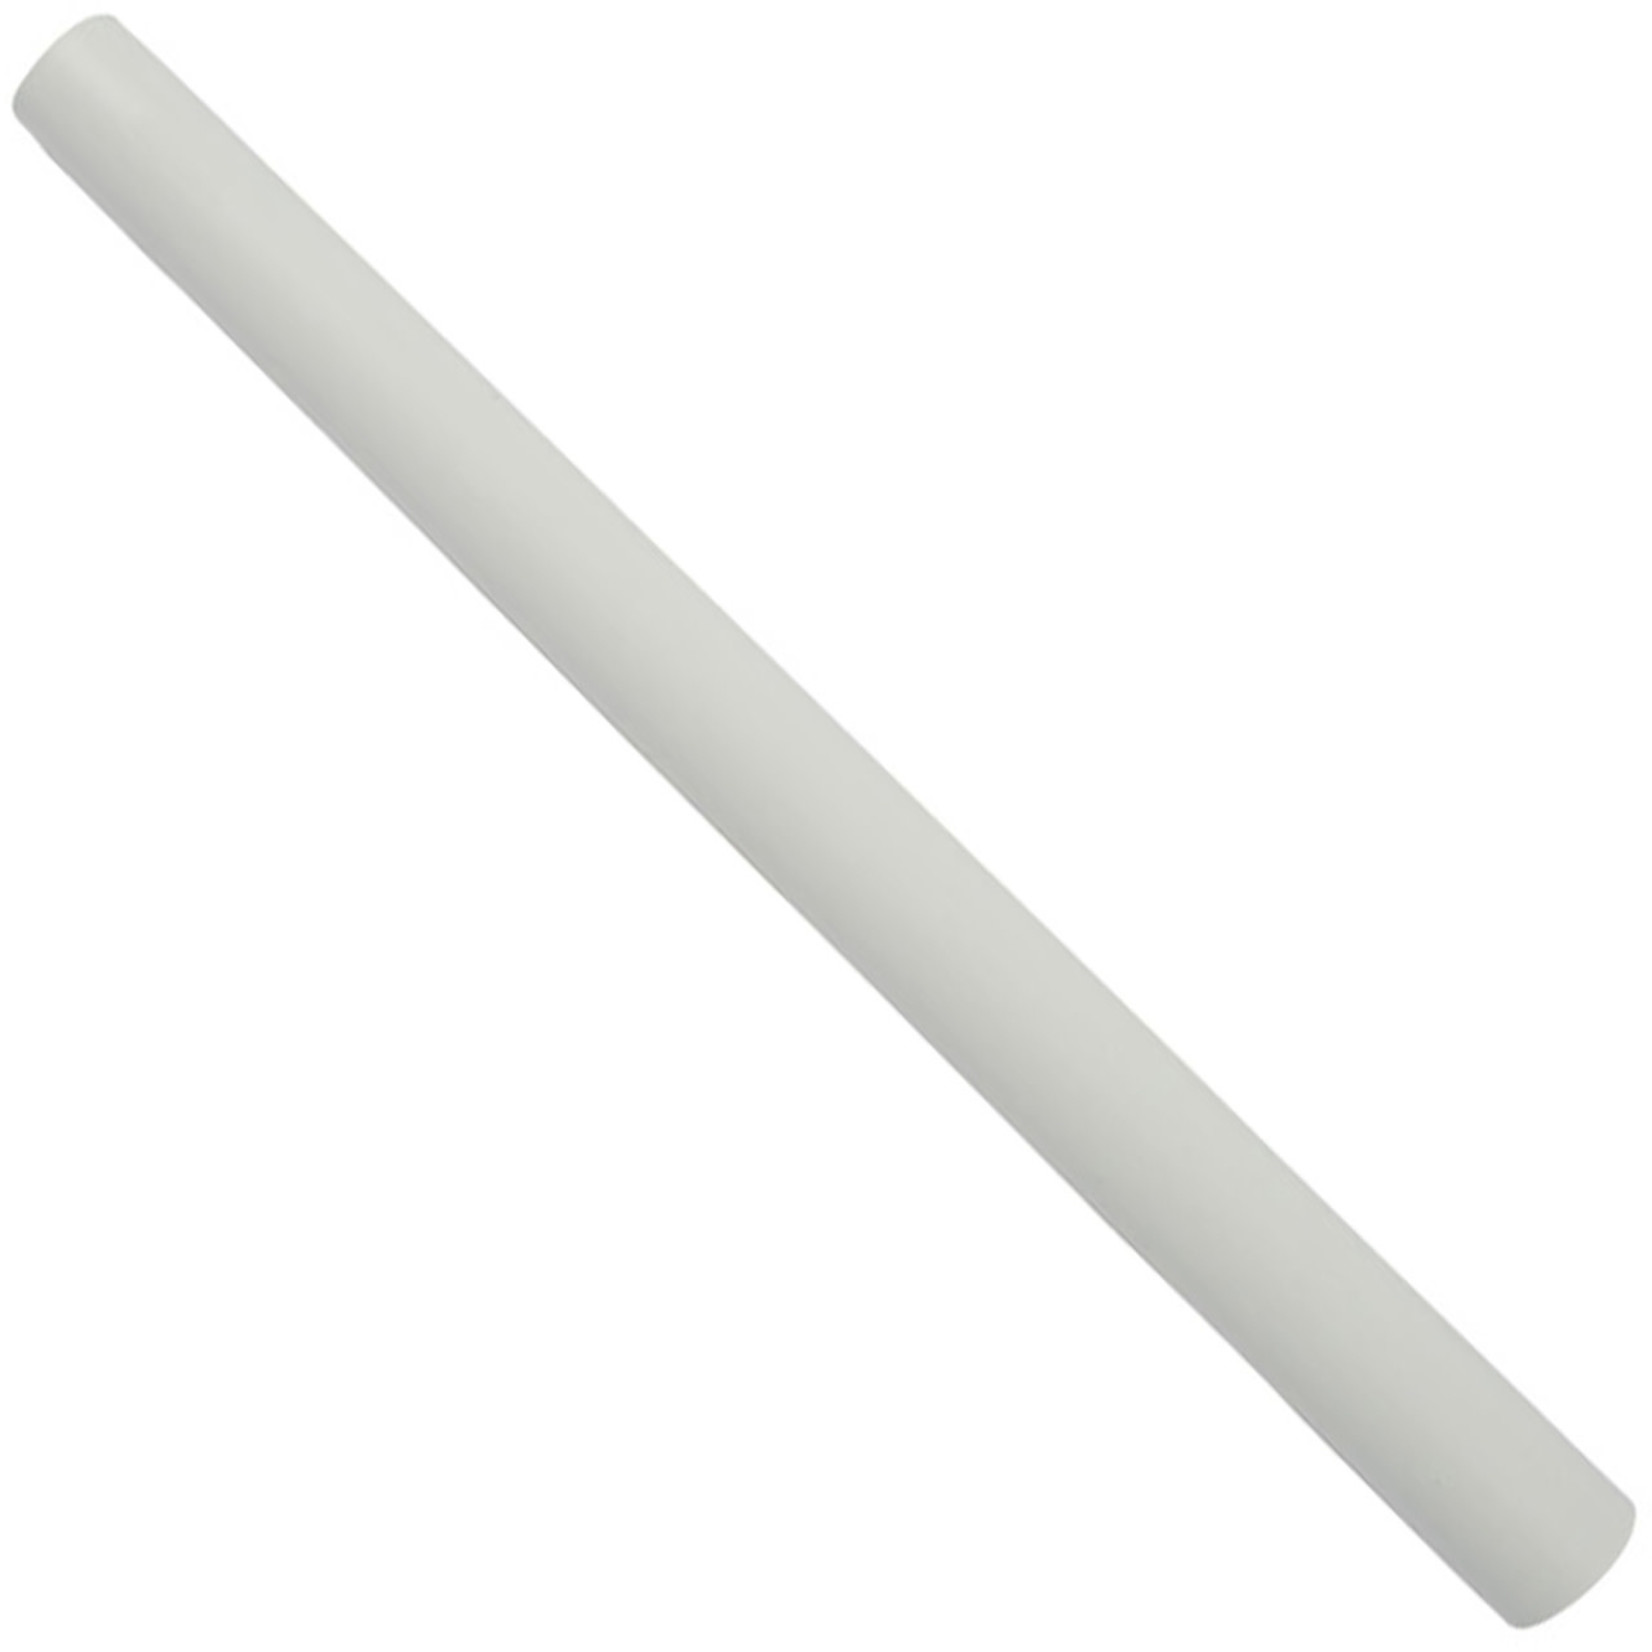 Centec Central Vacuum CenTec 17" Plastic Wand - White